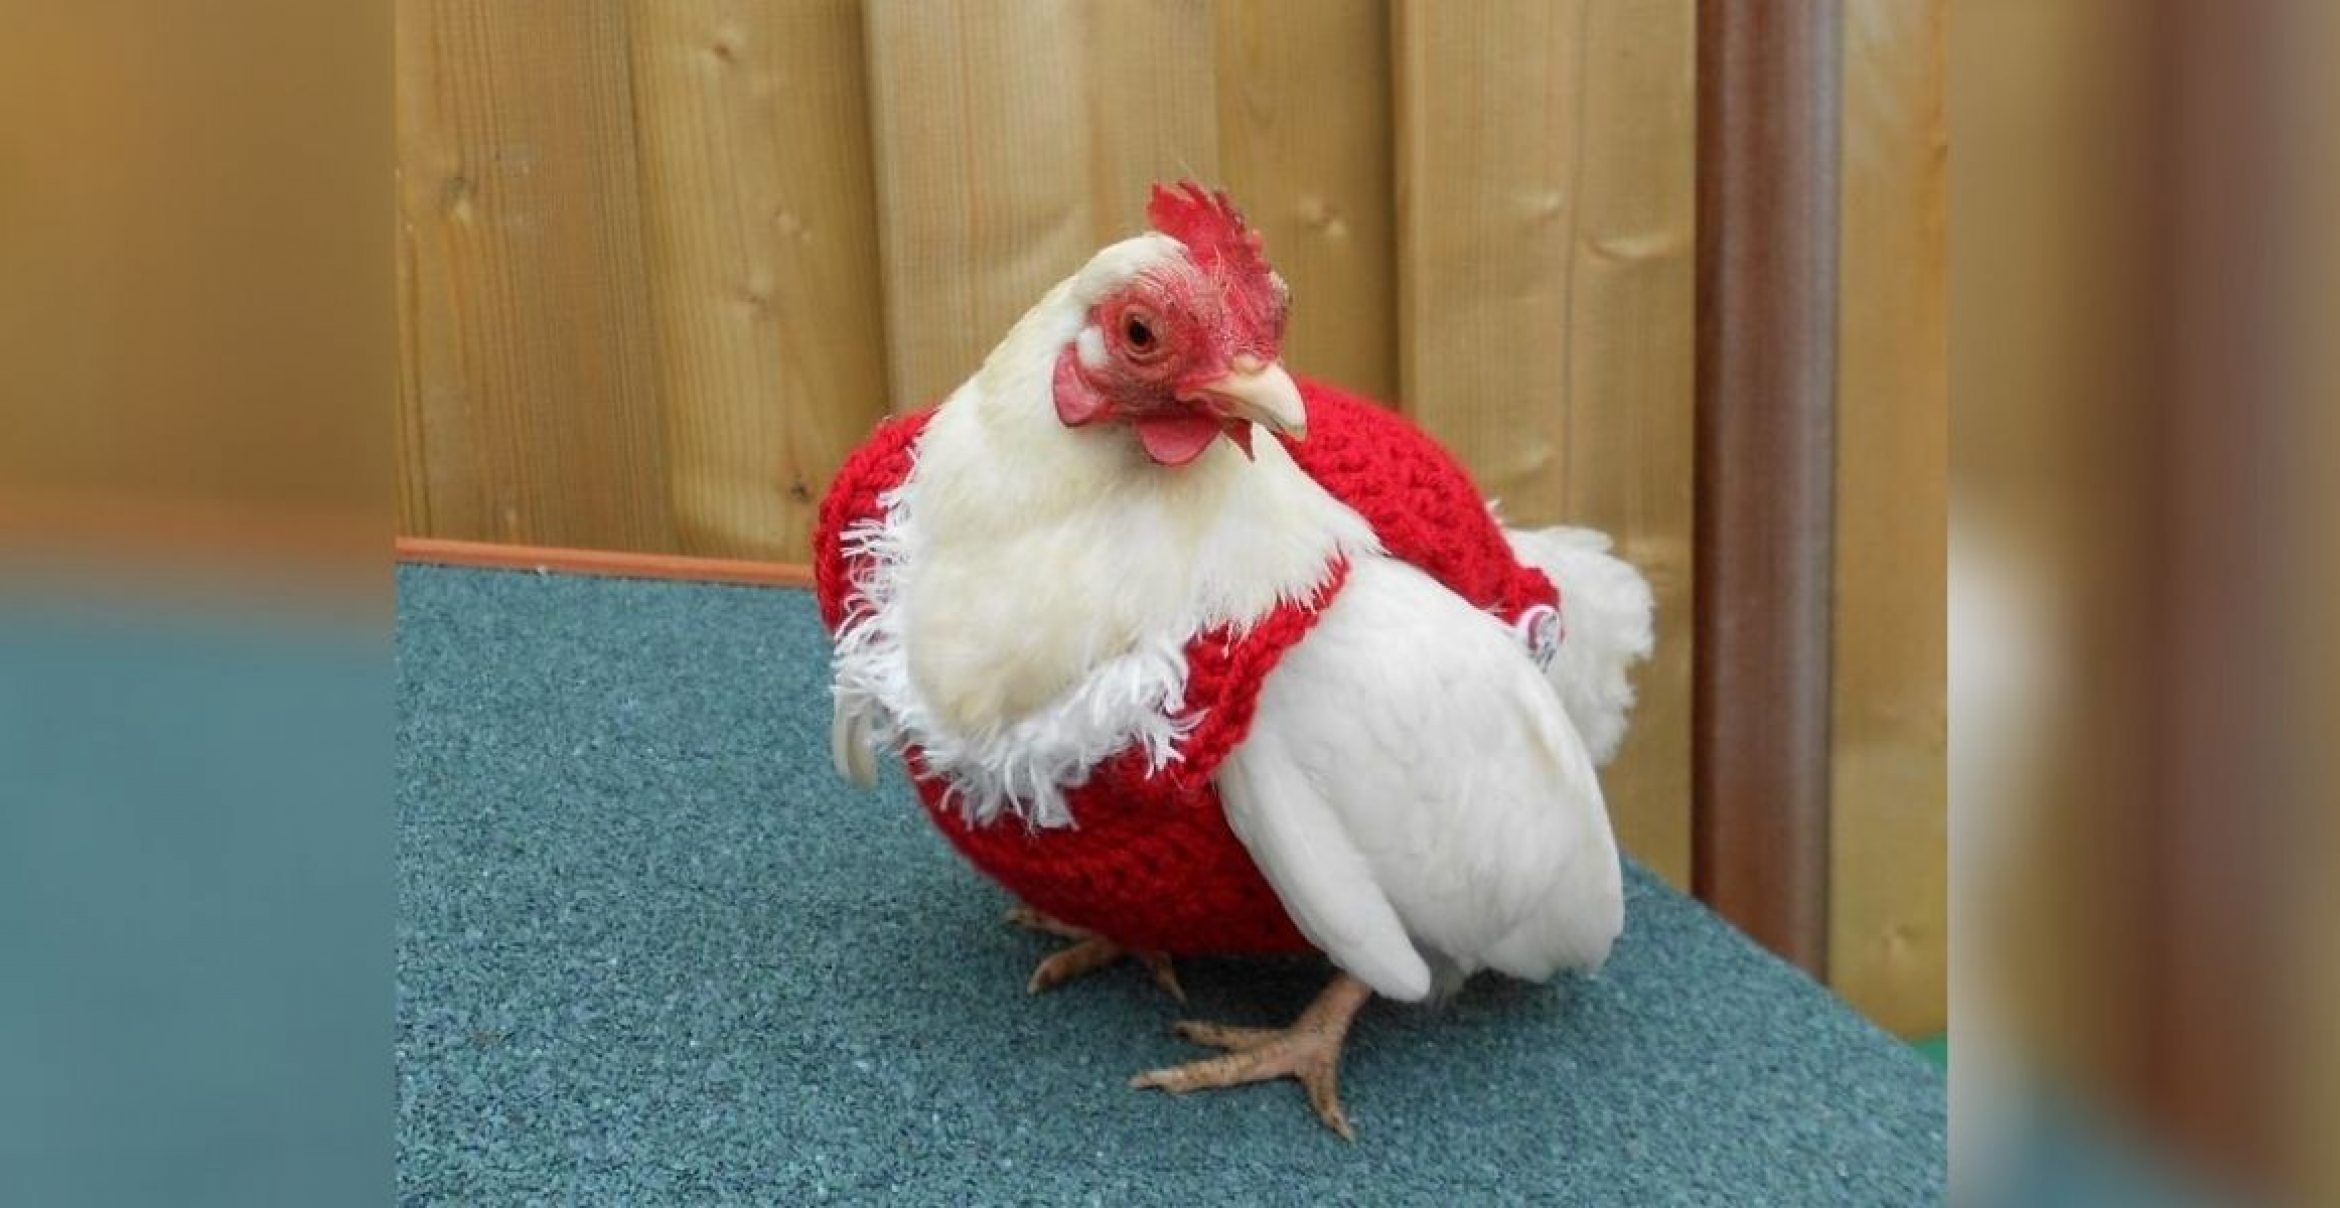 Cuteness Overload: Auf Etsy verkauft jemand gehäkelte Weihnachtspullover für Hühner